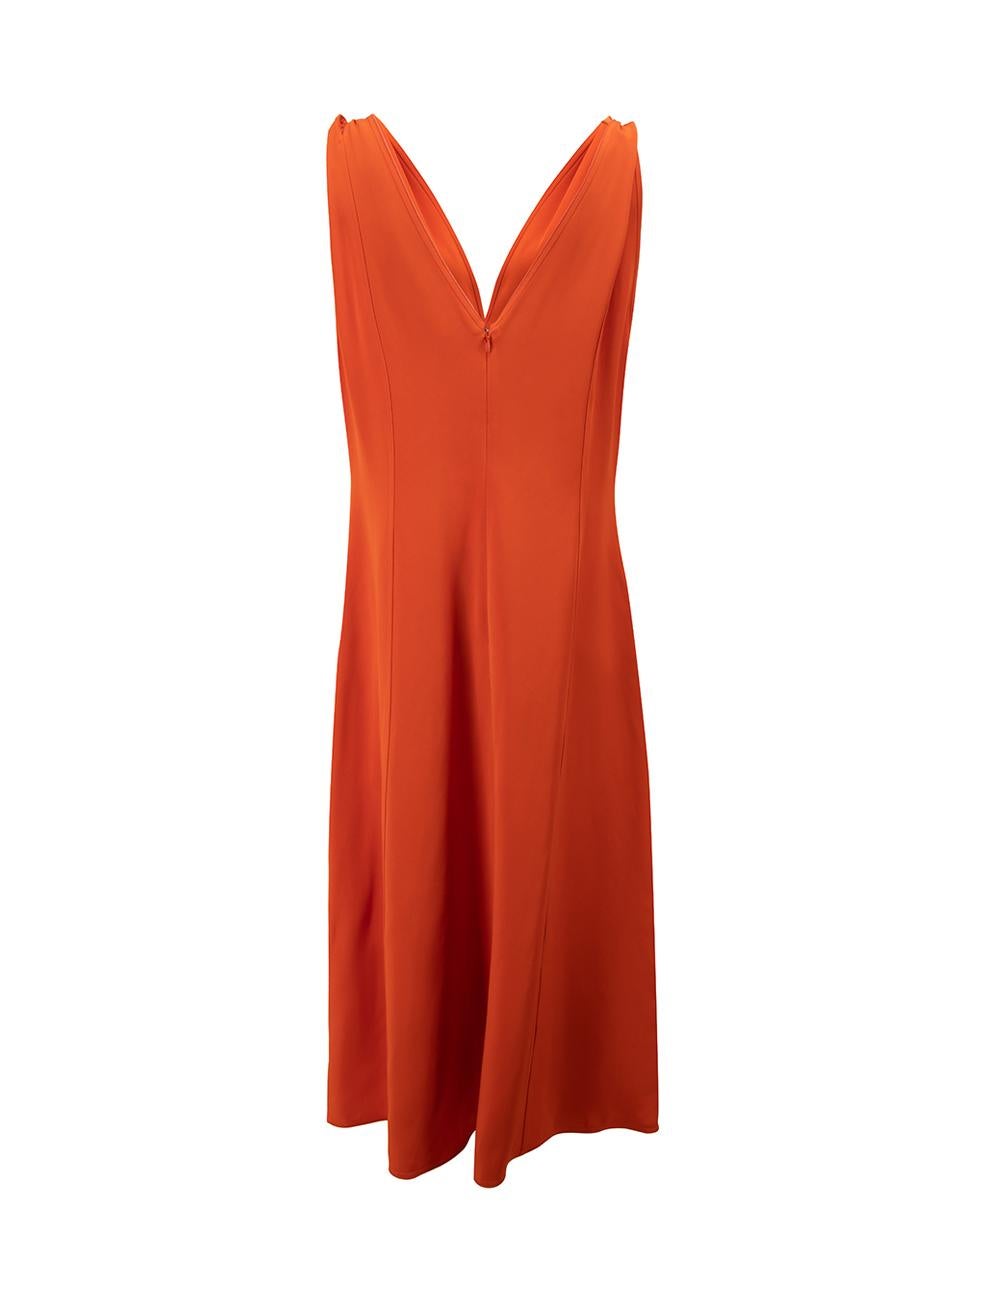 Victoria Beckham Women's AW22 Orange Twist Shoulder Midi Dress In Good Condition In London, GB